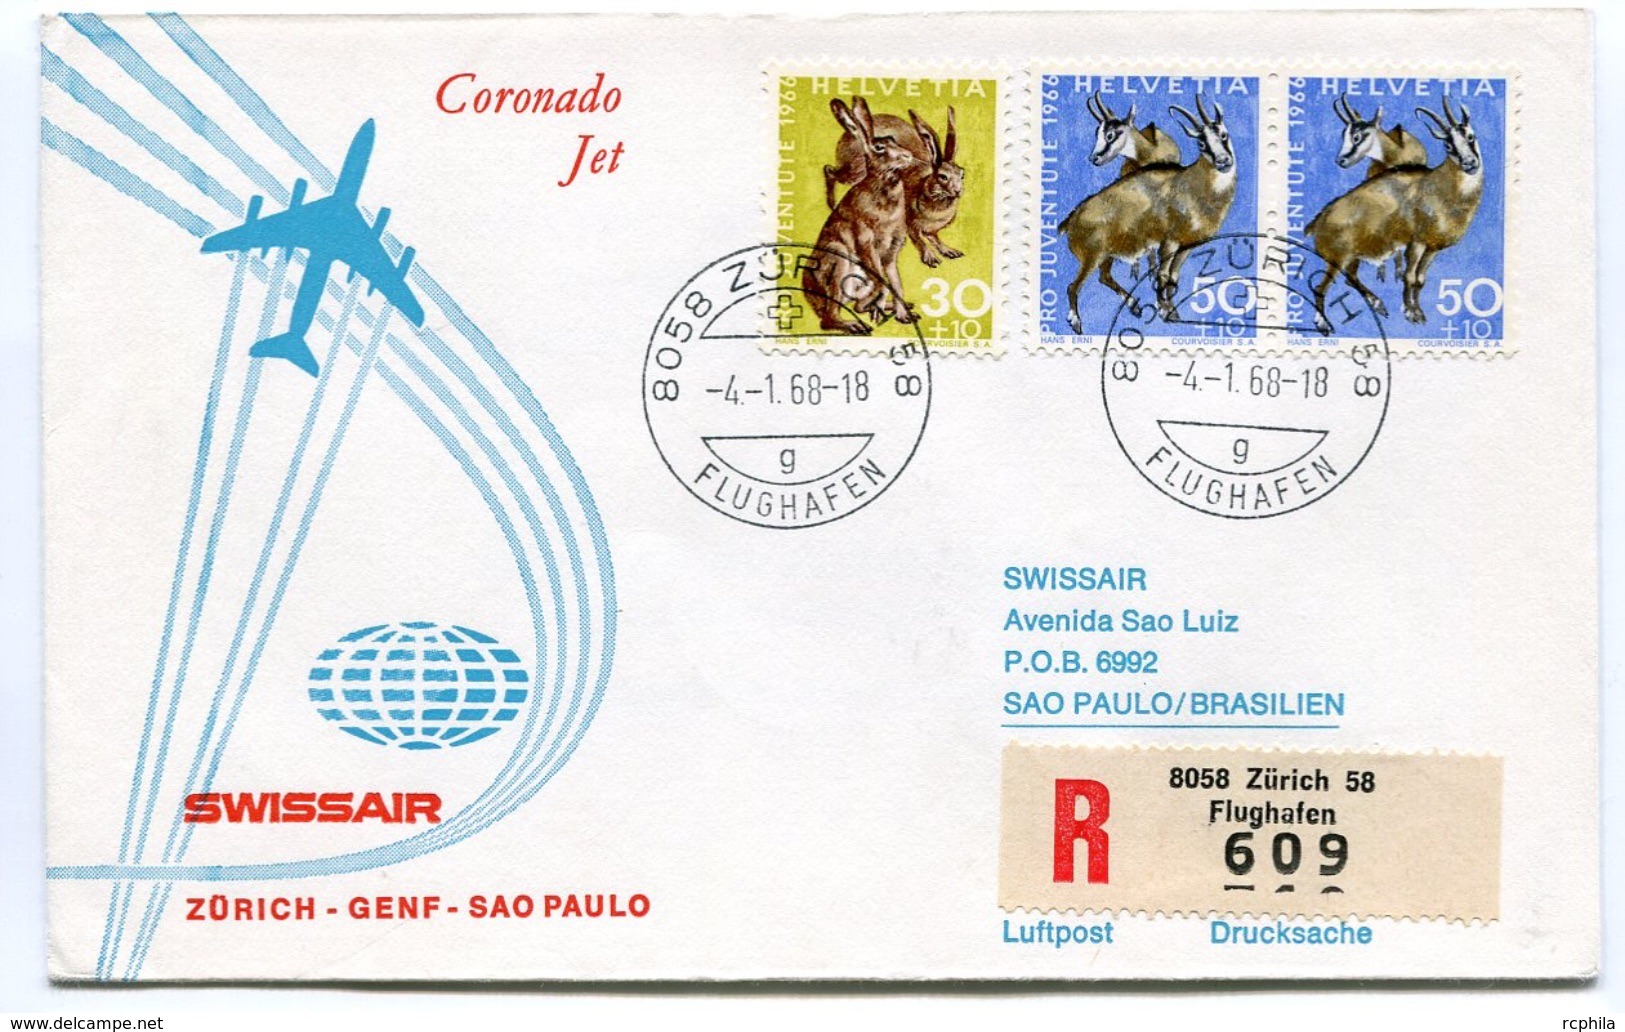 RC 6608 SUISSE SWITZERLAND 1968 1er VOL SWISSAIR ZURICH - SAO PAULO BRESIL FFC LETTRE COVER - Primeros Vuelos